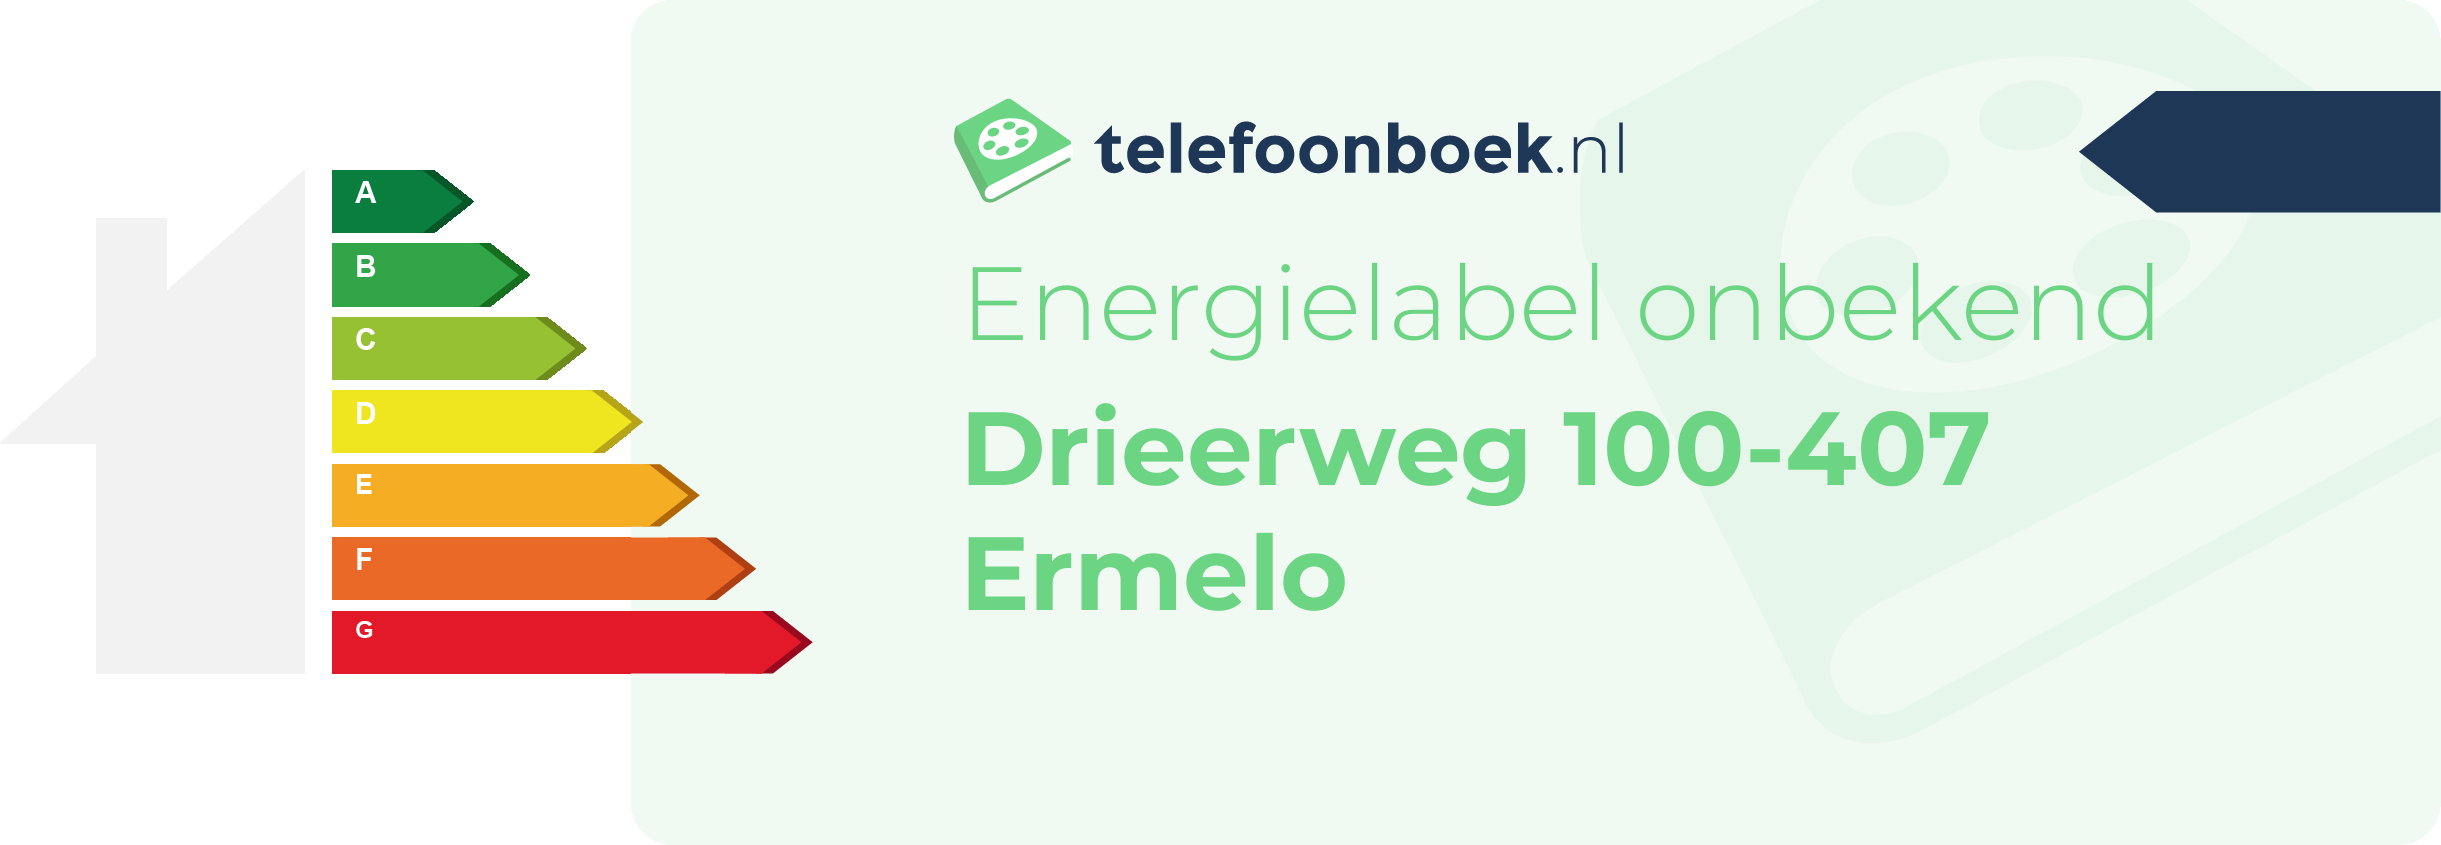 Energielabel Drieerweg 100-407 Ermelo